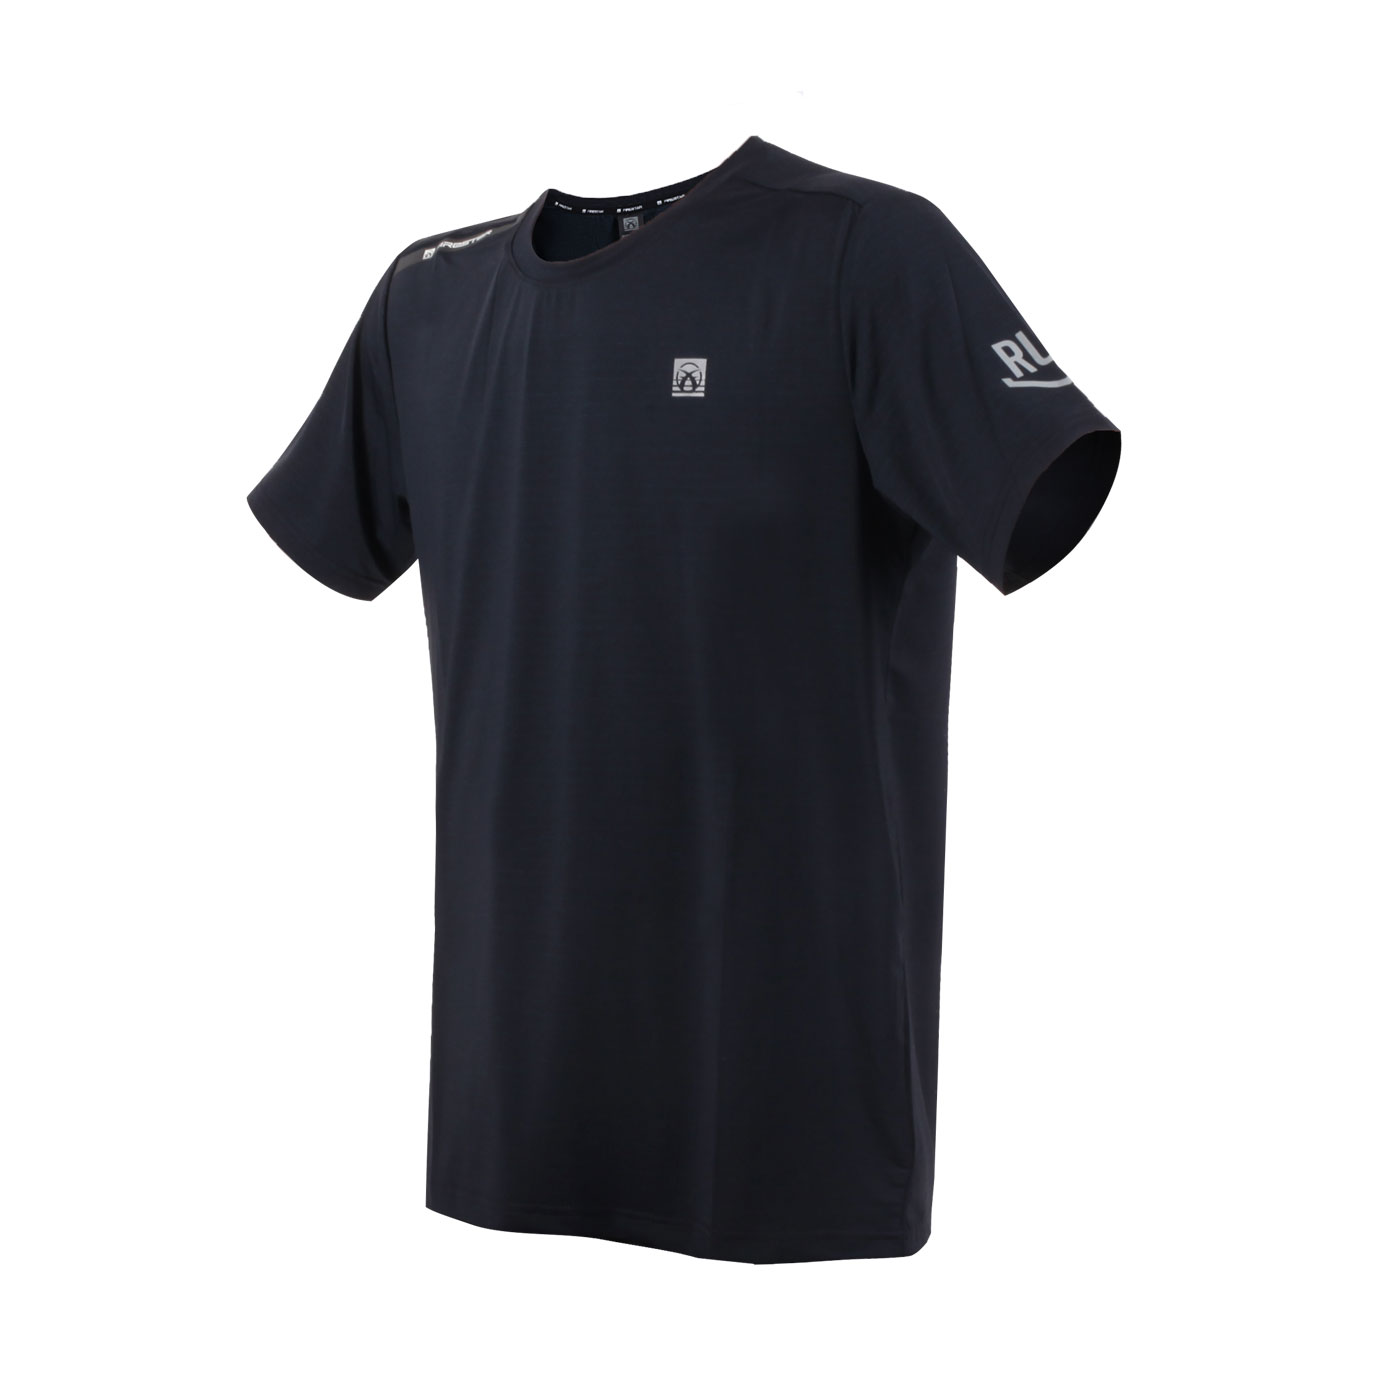 FIRESTAR 男款彈性圓領短袖T恤  D3230-98